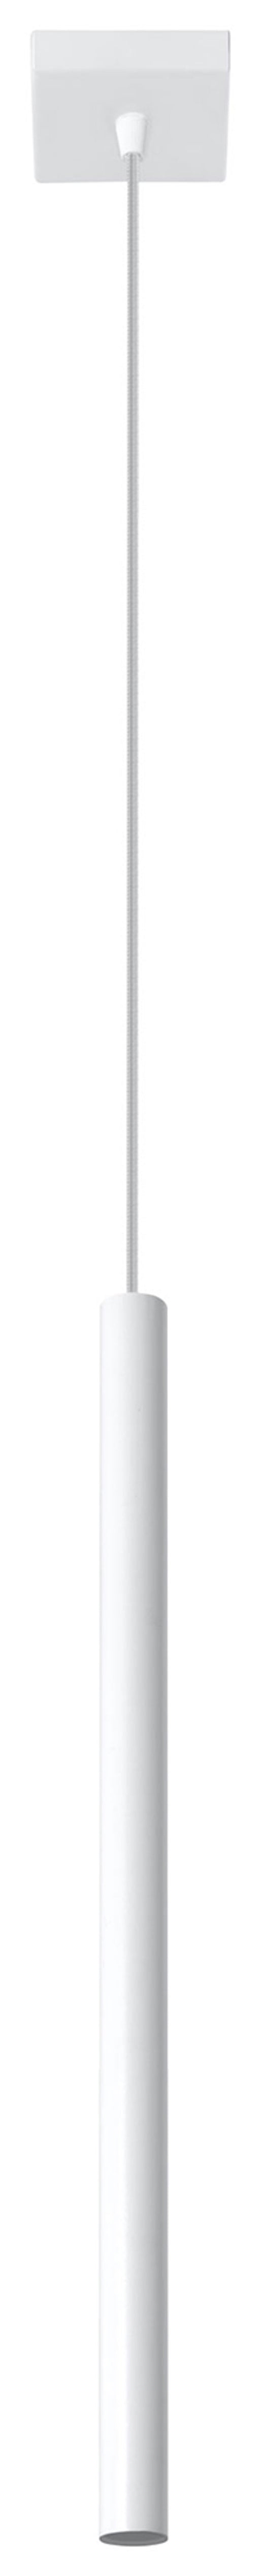 Pendant lamp PASTELO 1 White Round Tube Shape Spot Modern Loft Design LED G9 -